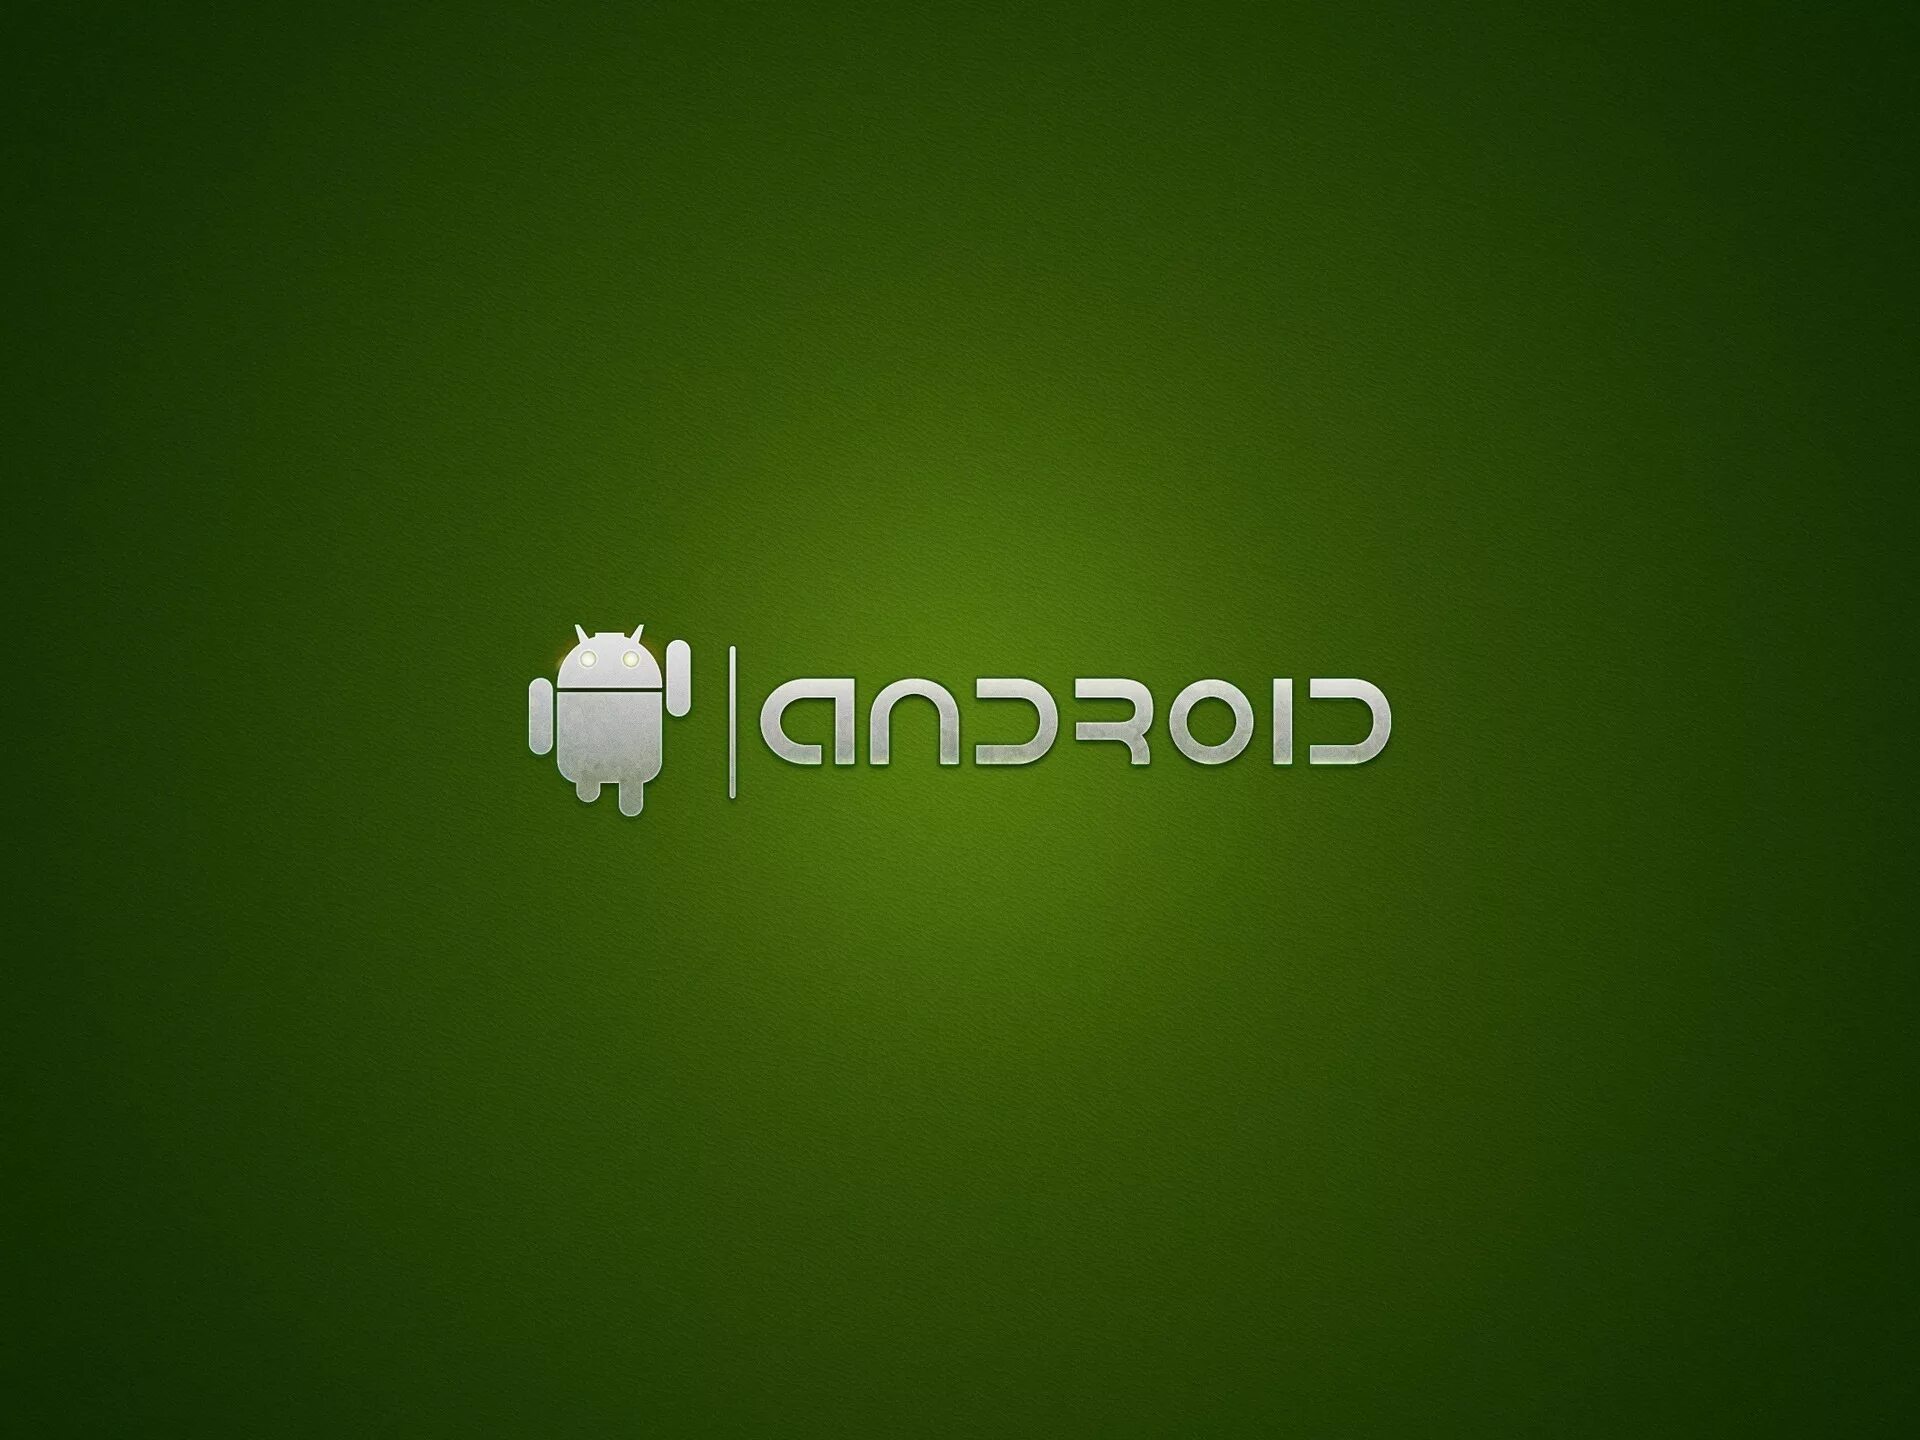 Логотип андроид на заставку. Логотип андроид. Обои на андроид. Android картинки. Андроид надпись.